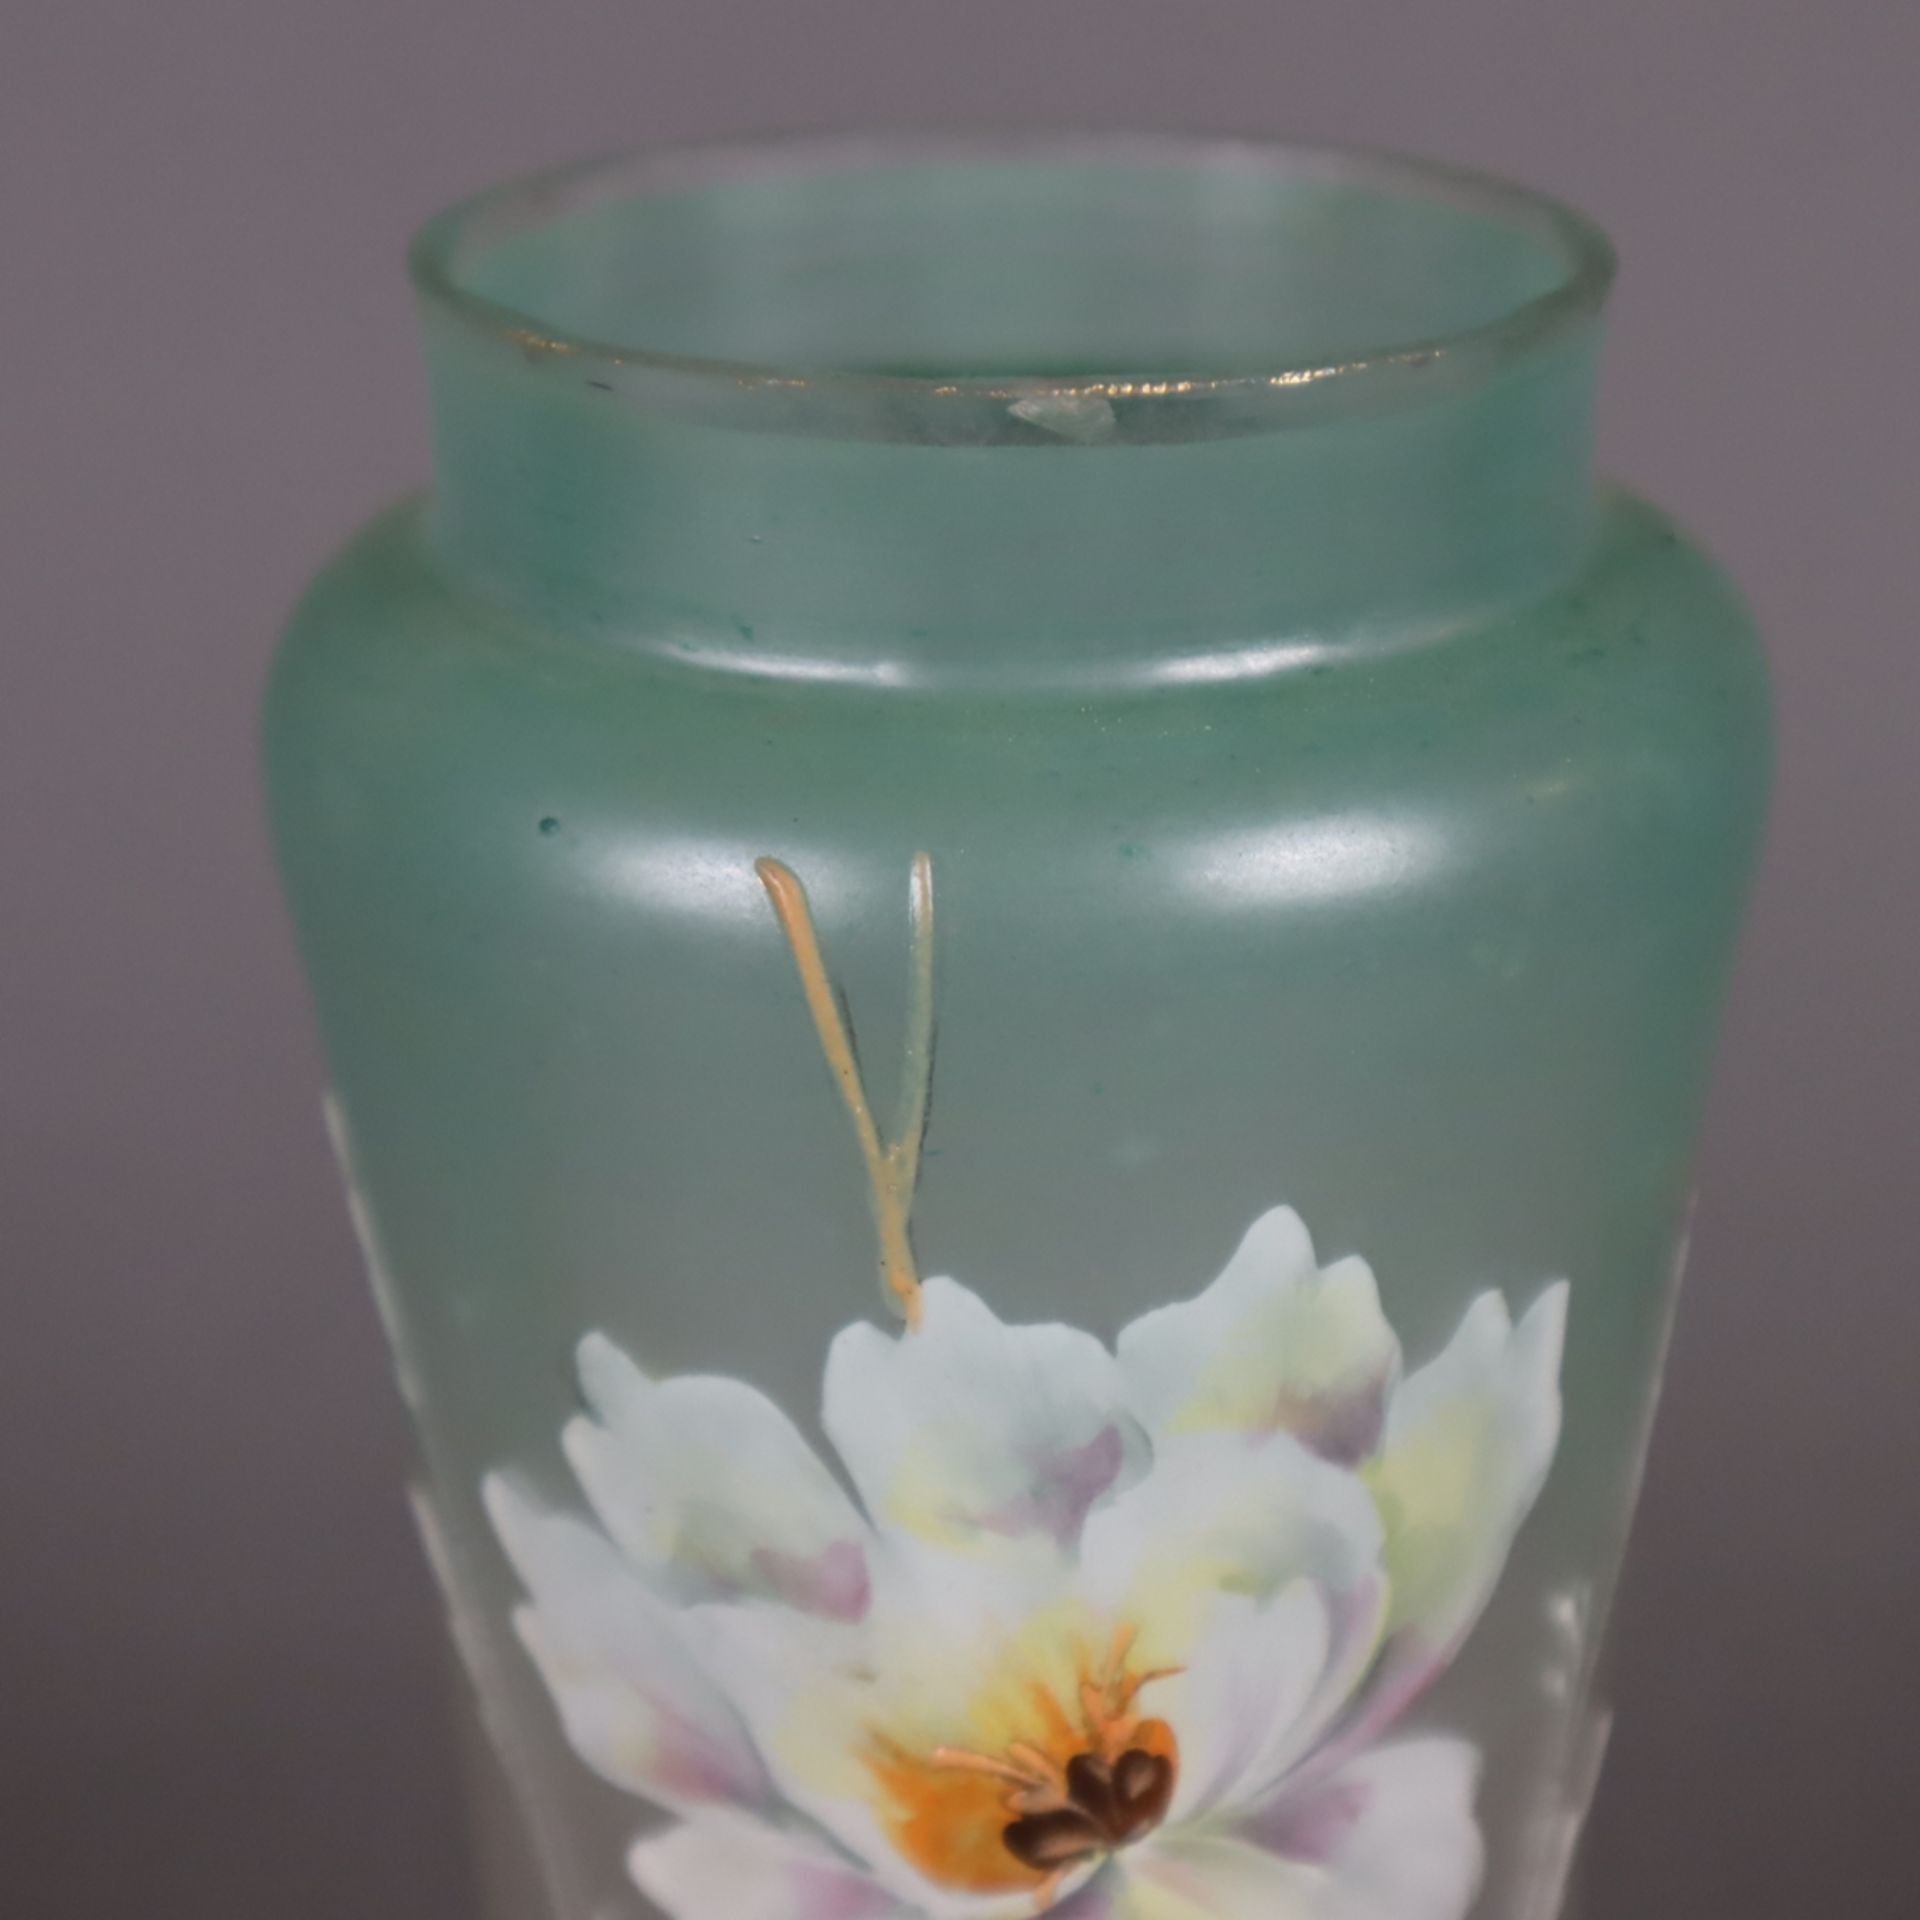 Glasvase - Klarglas, mattiert, Schauseite mit polychromem Blumendekor, Keulenfo - Image 2 of 7